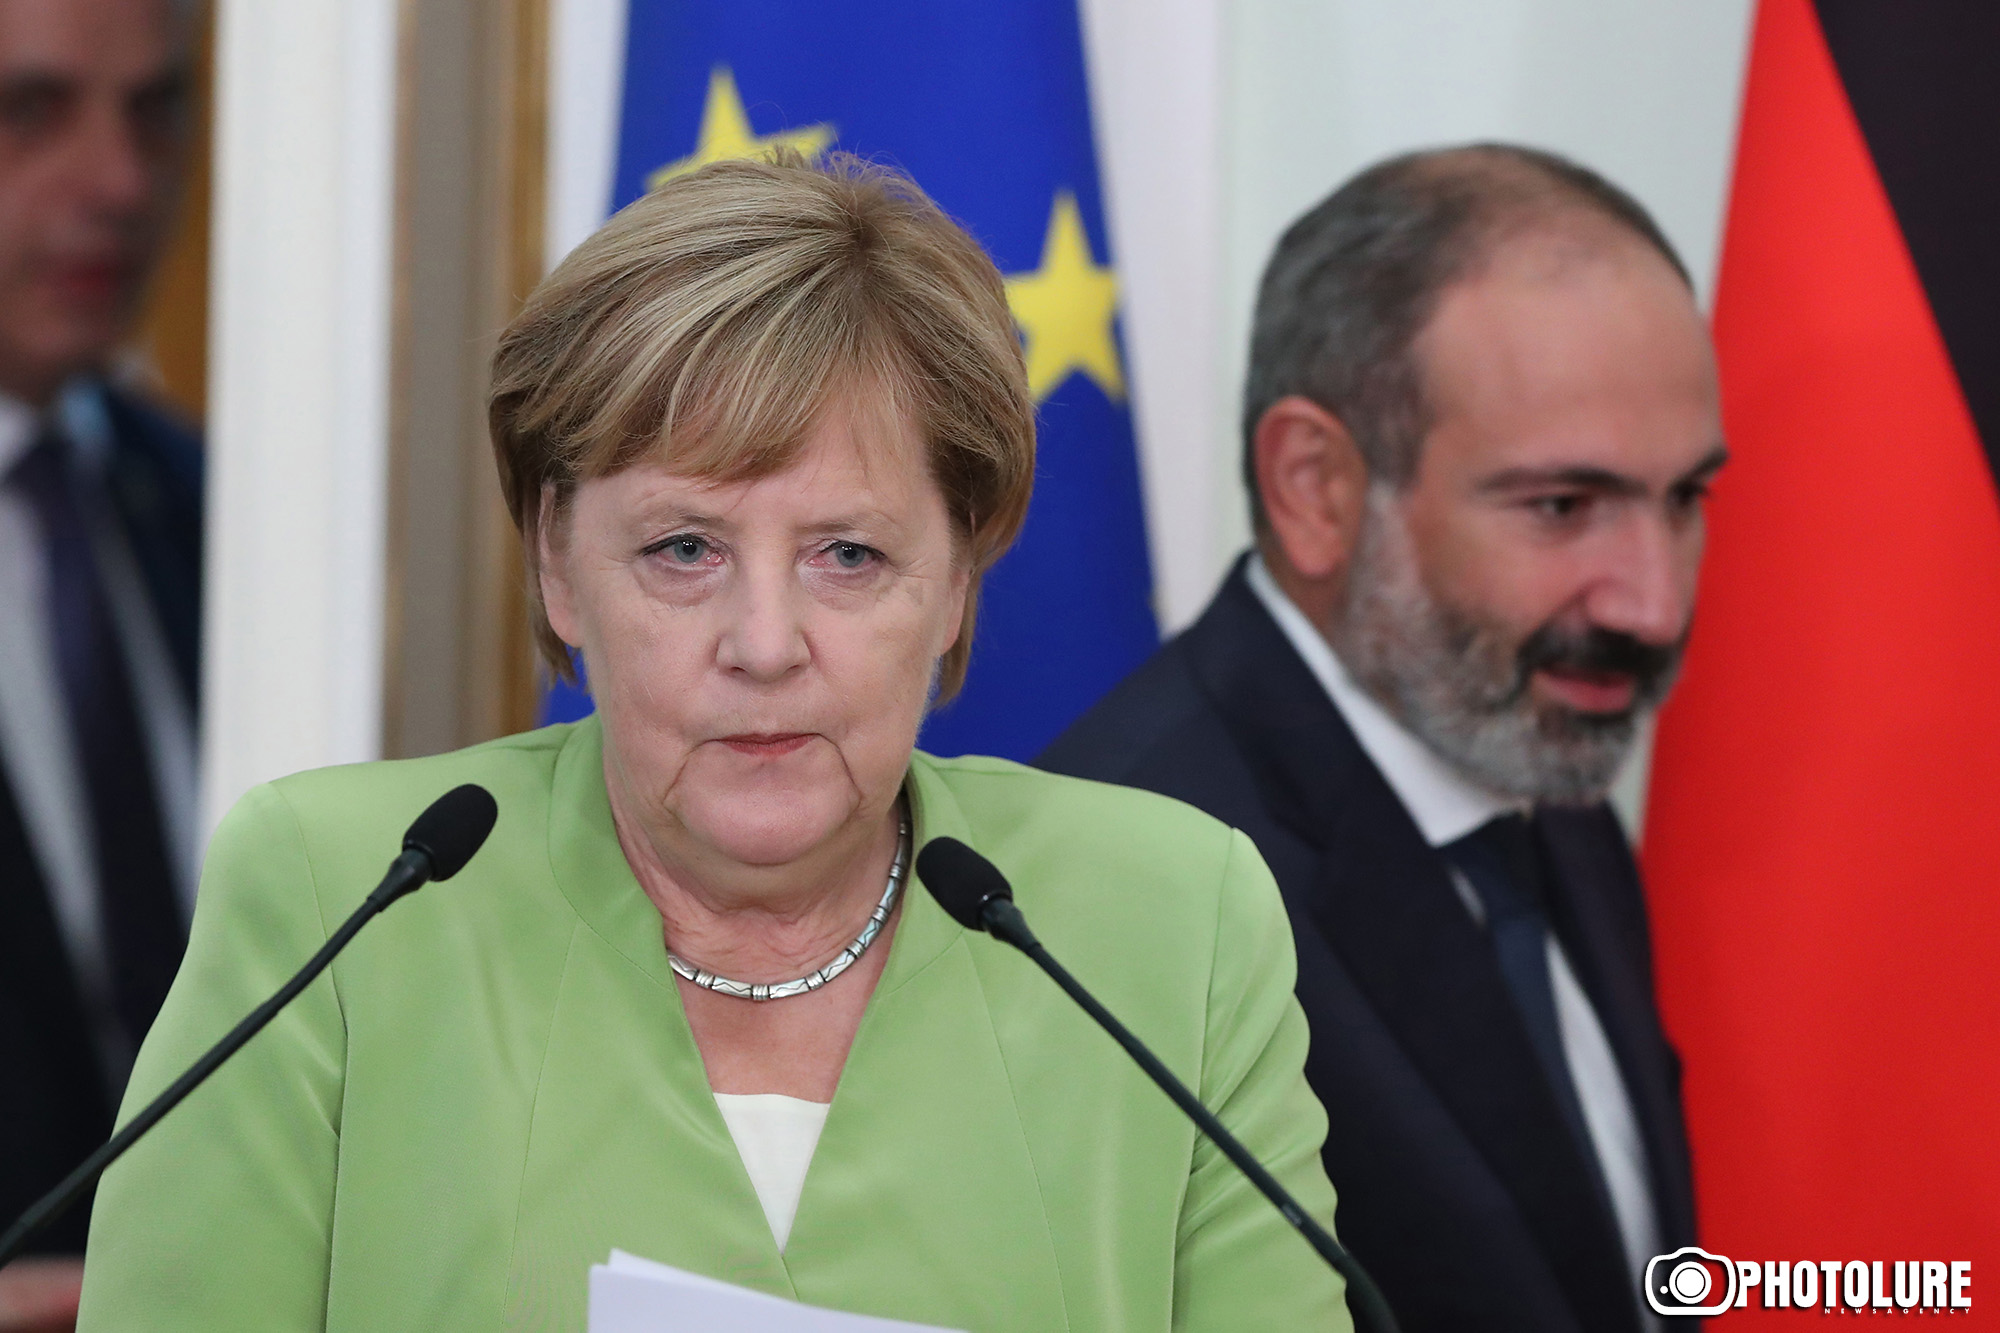 Карабах, взаимная торговля и Армения, как партнер ЕС - о чем говорили Меркель и Пашинян?